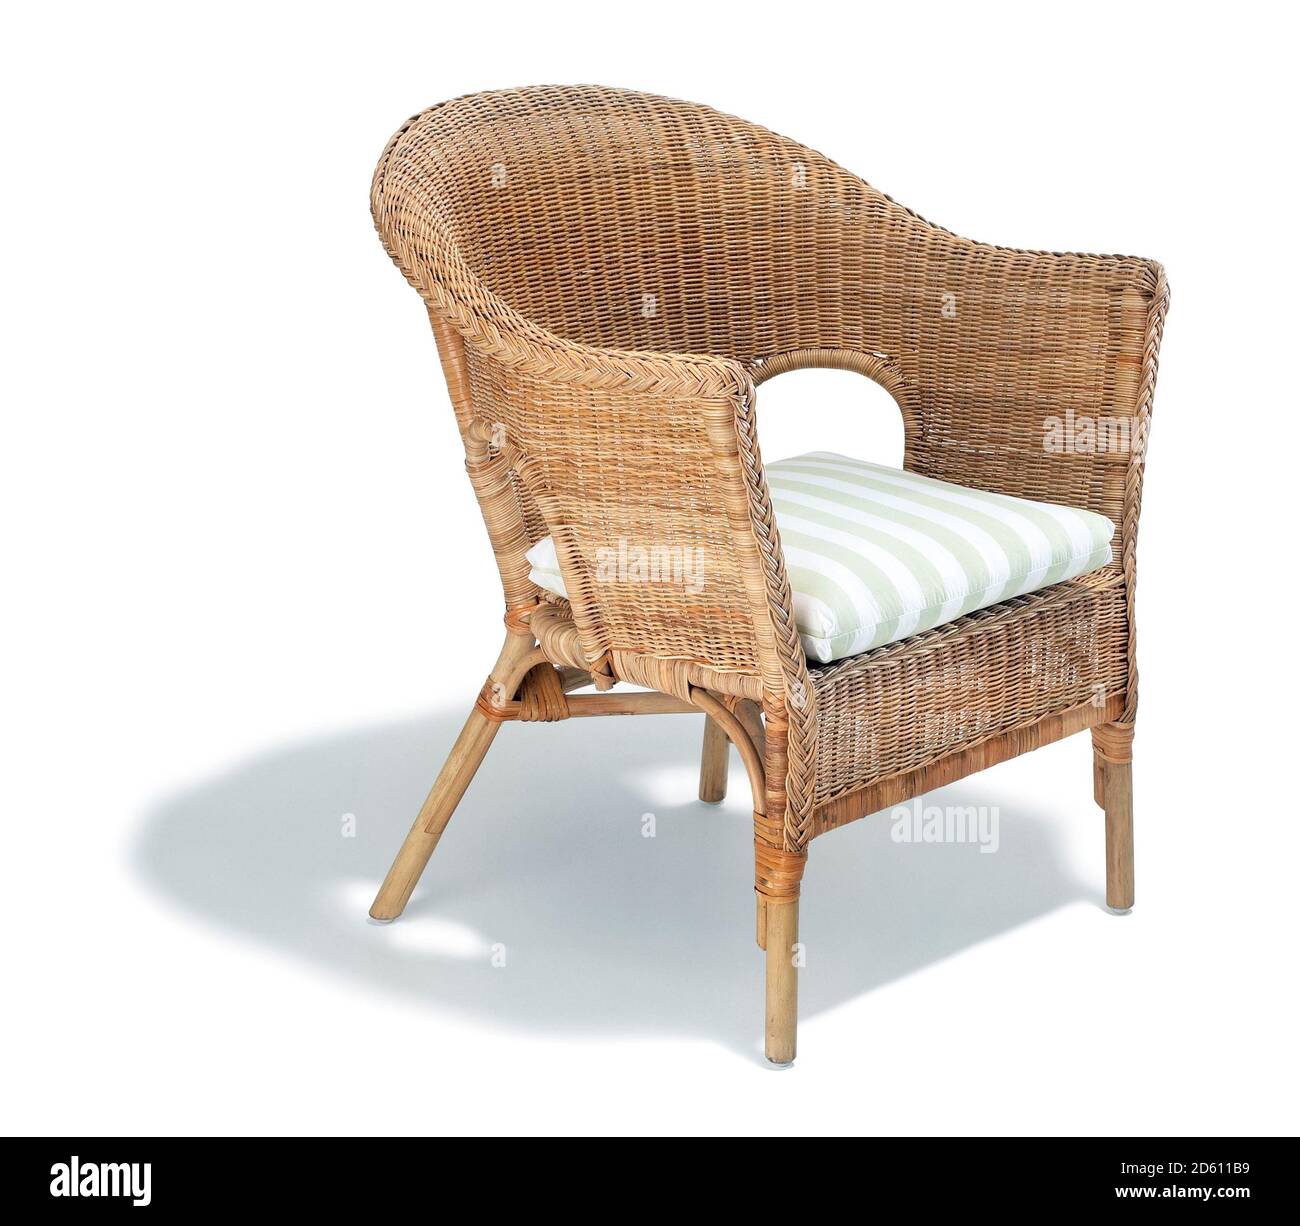 Chaise en osier avec coussin rayé photographié sur fond blanc Banque D'Images